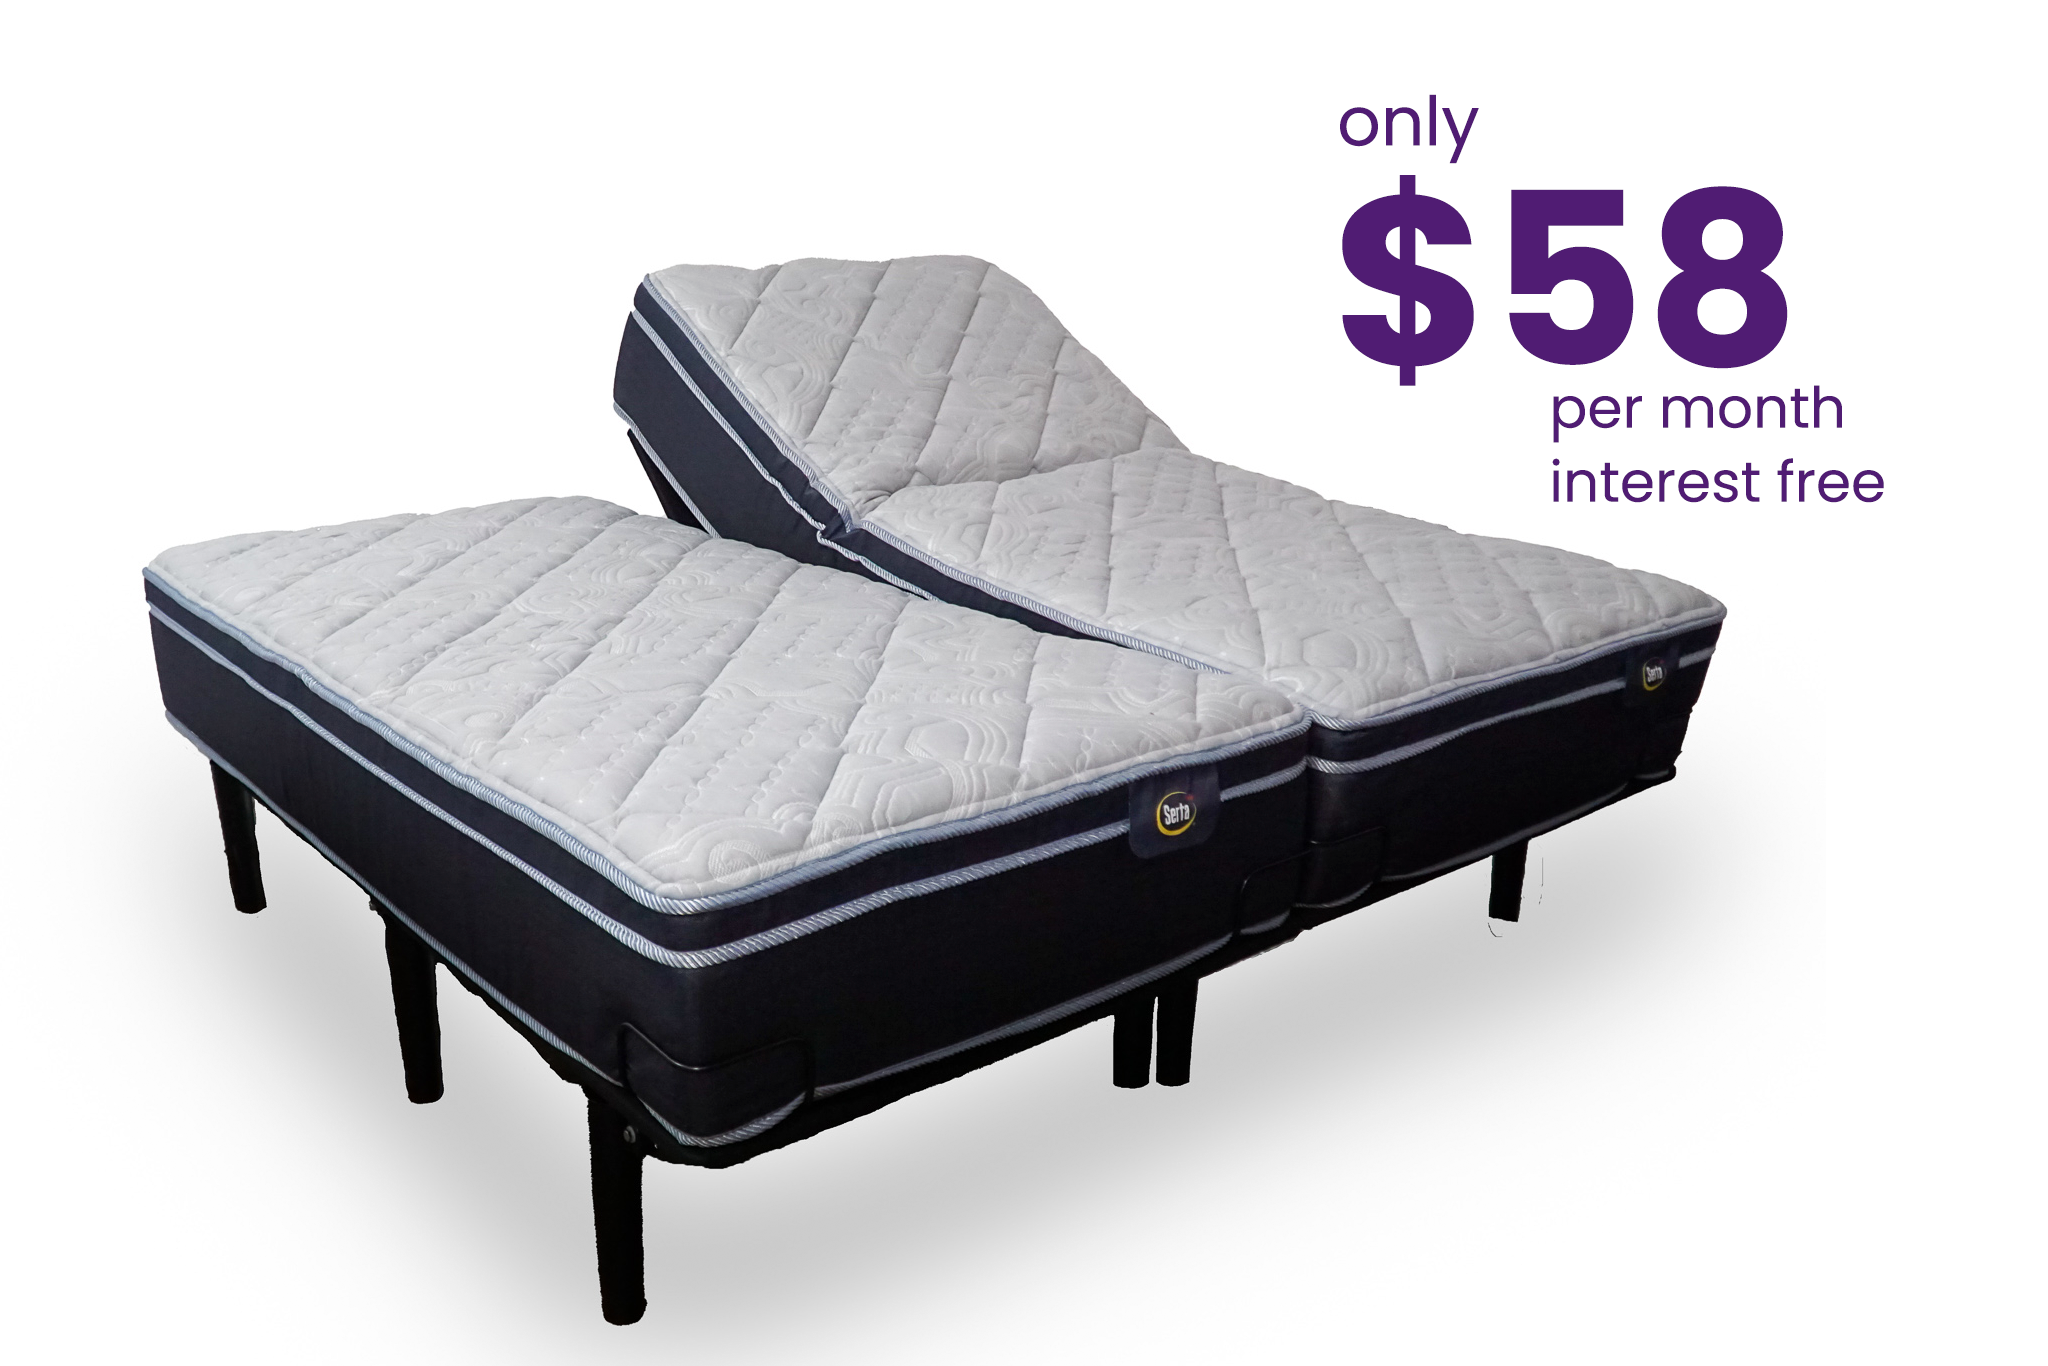 Serta Luxury Split King Adjustable Bed Package